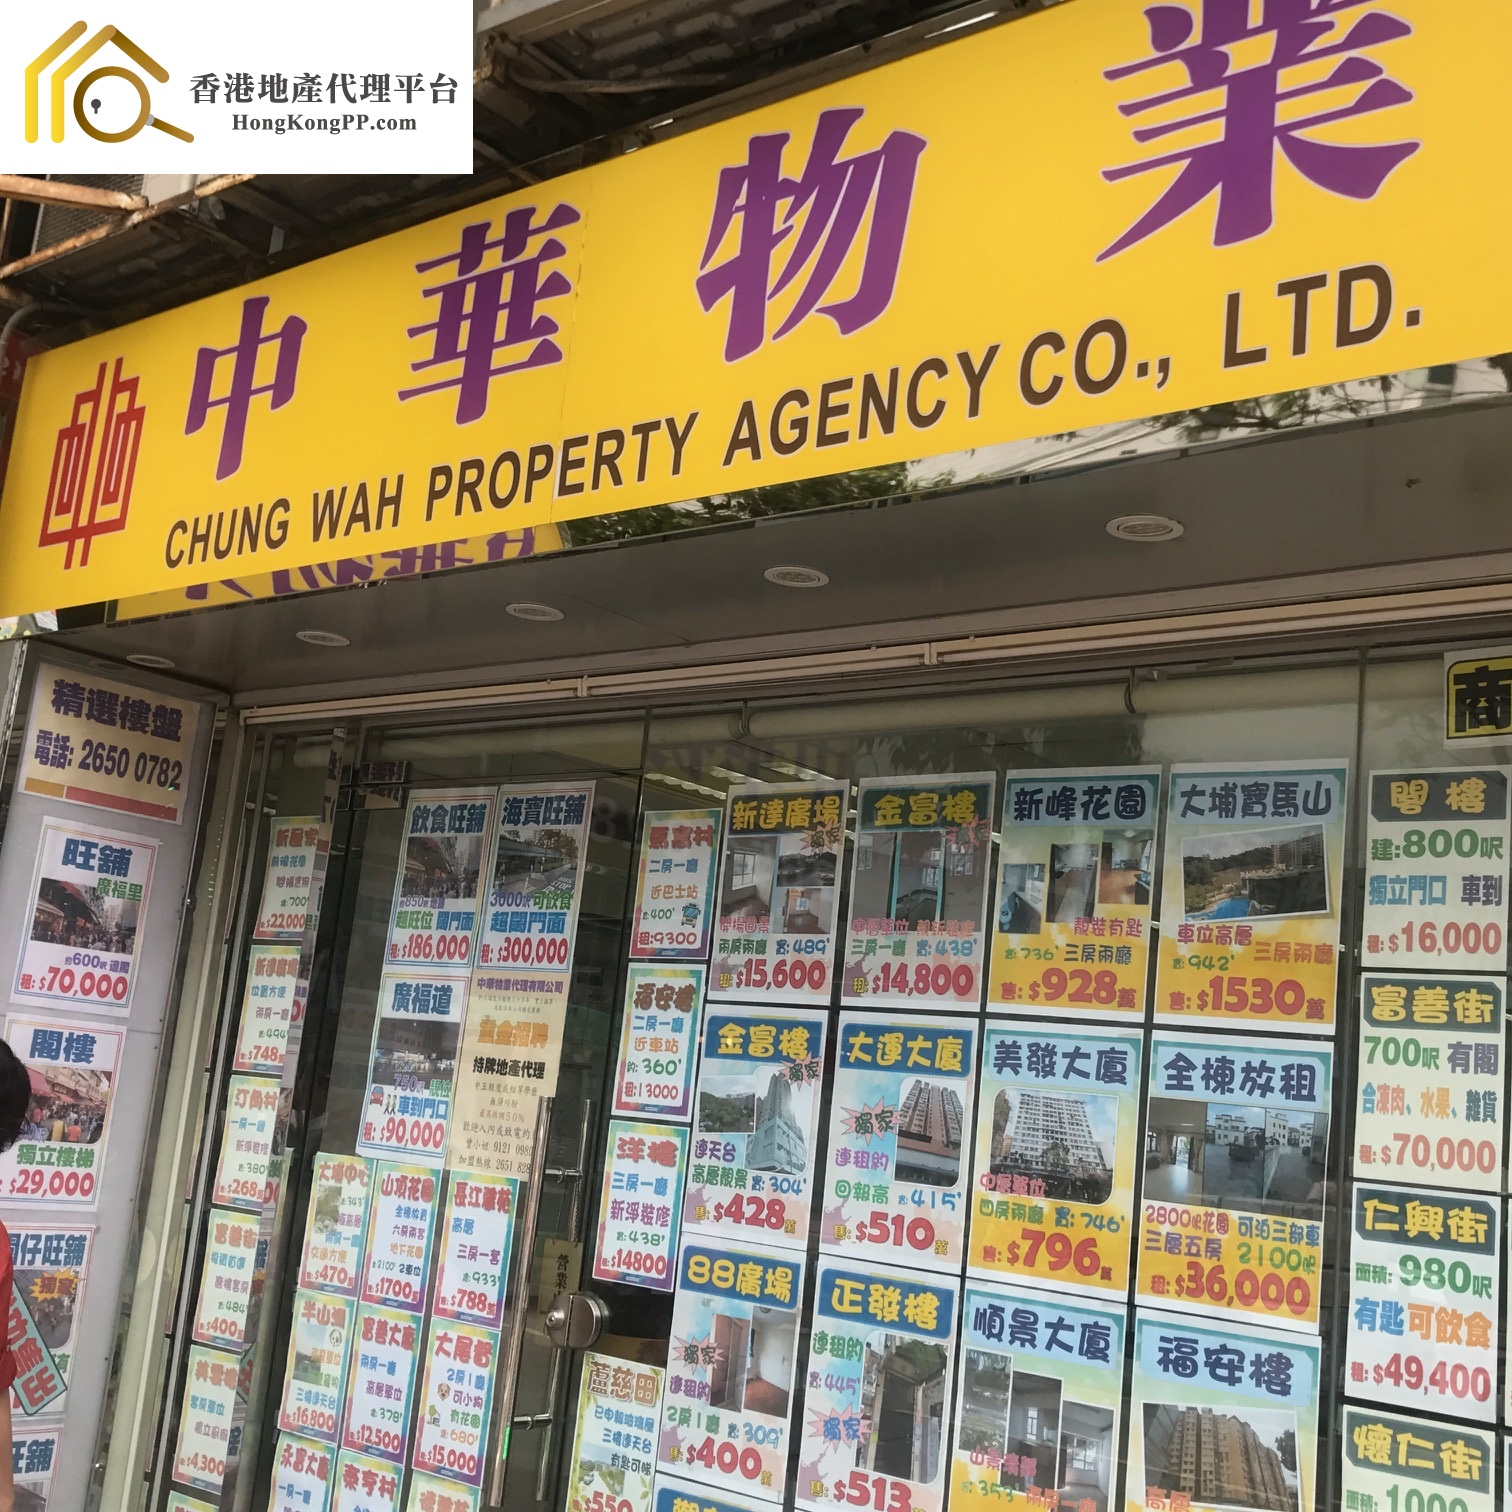 住宅地產代理: 中華物業代理 Chung Wah Property Agency